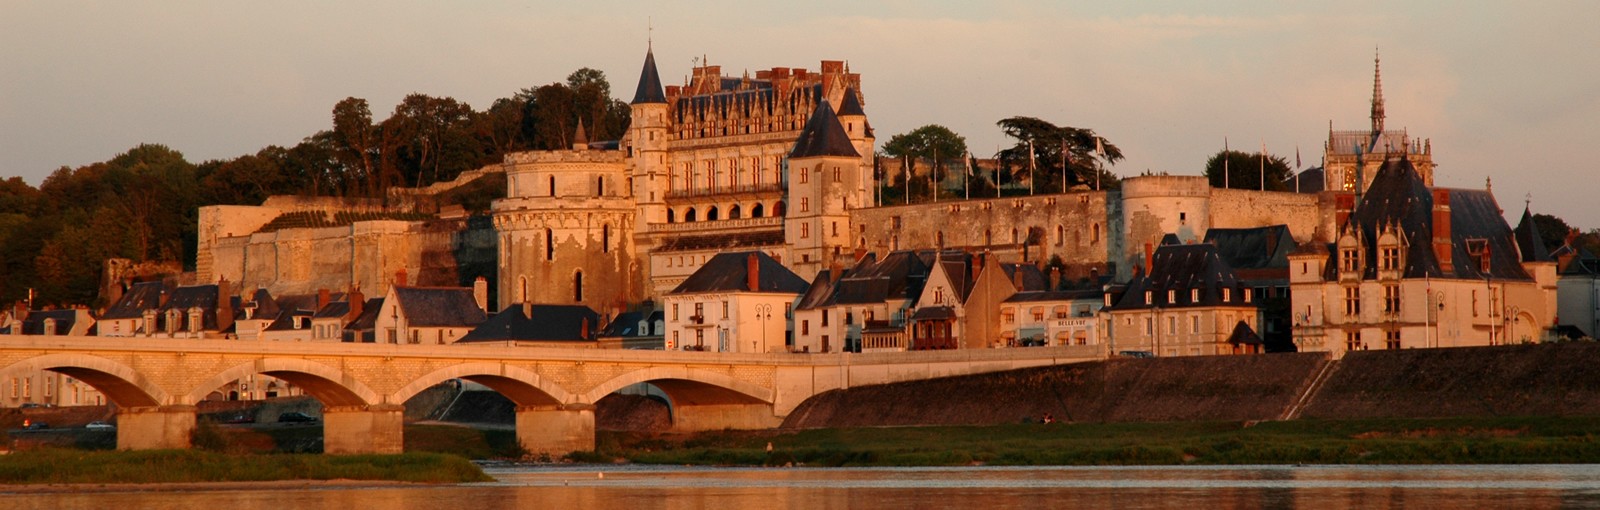 Tours Normandía, Mont-Saint-Michel, Castillos de la Loire y Chartres - Multi-régional - Circuitos desde Paris